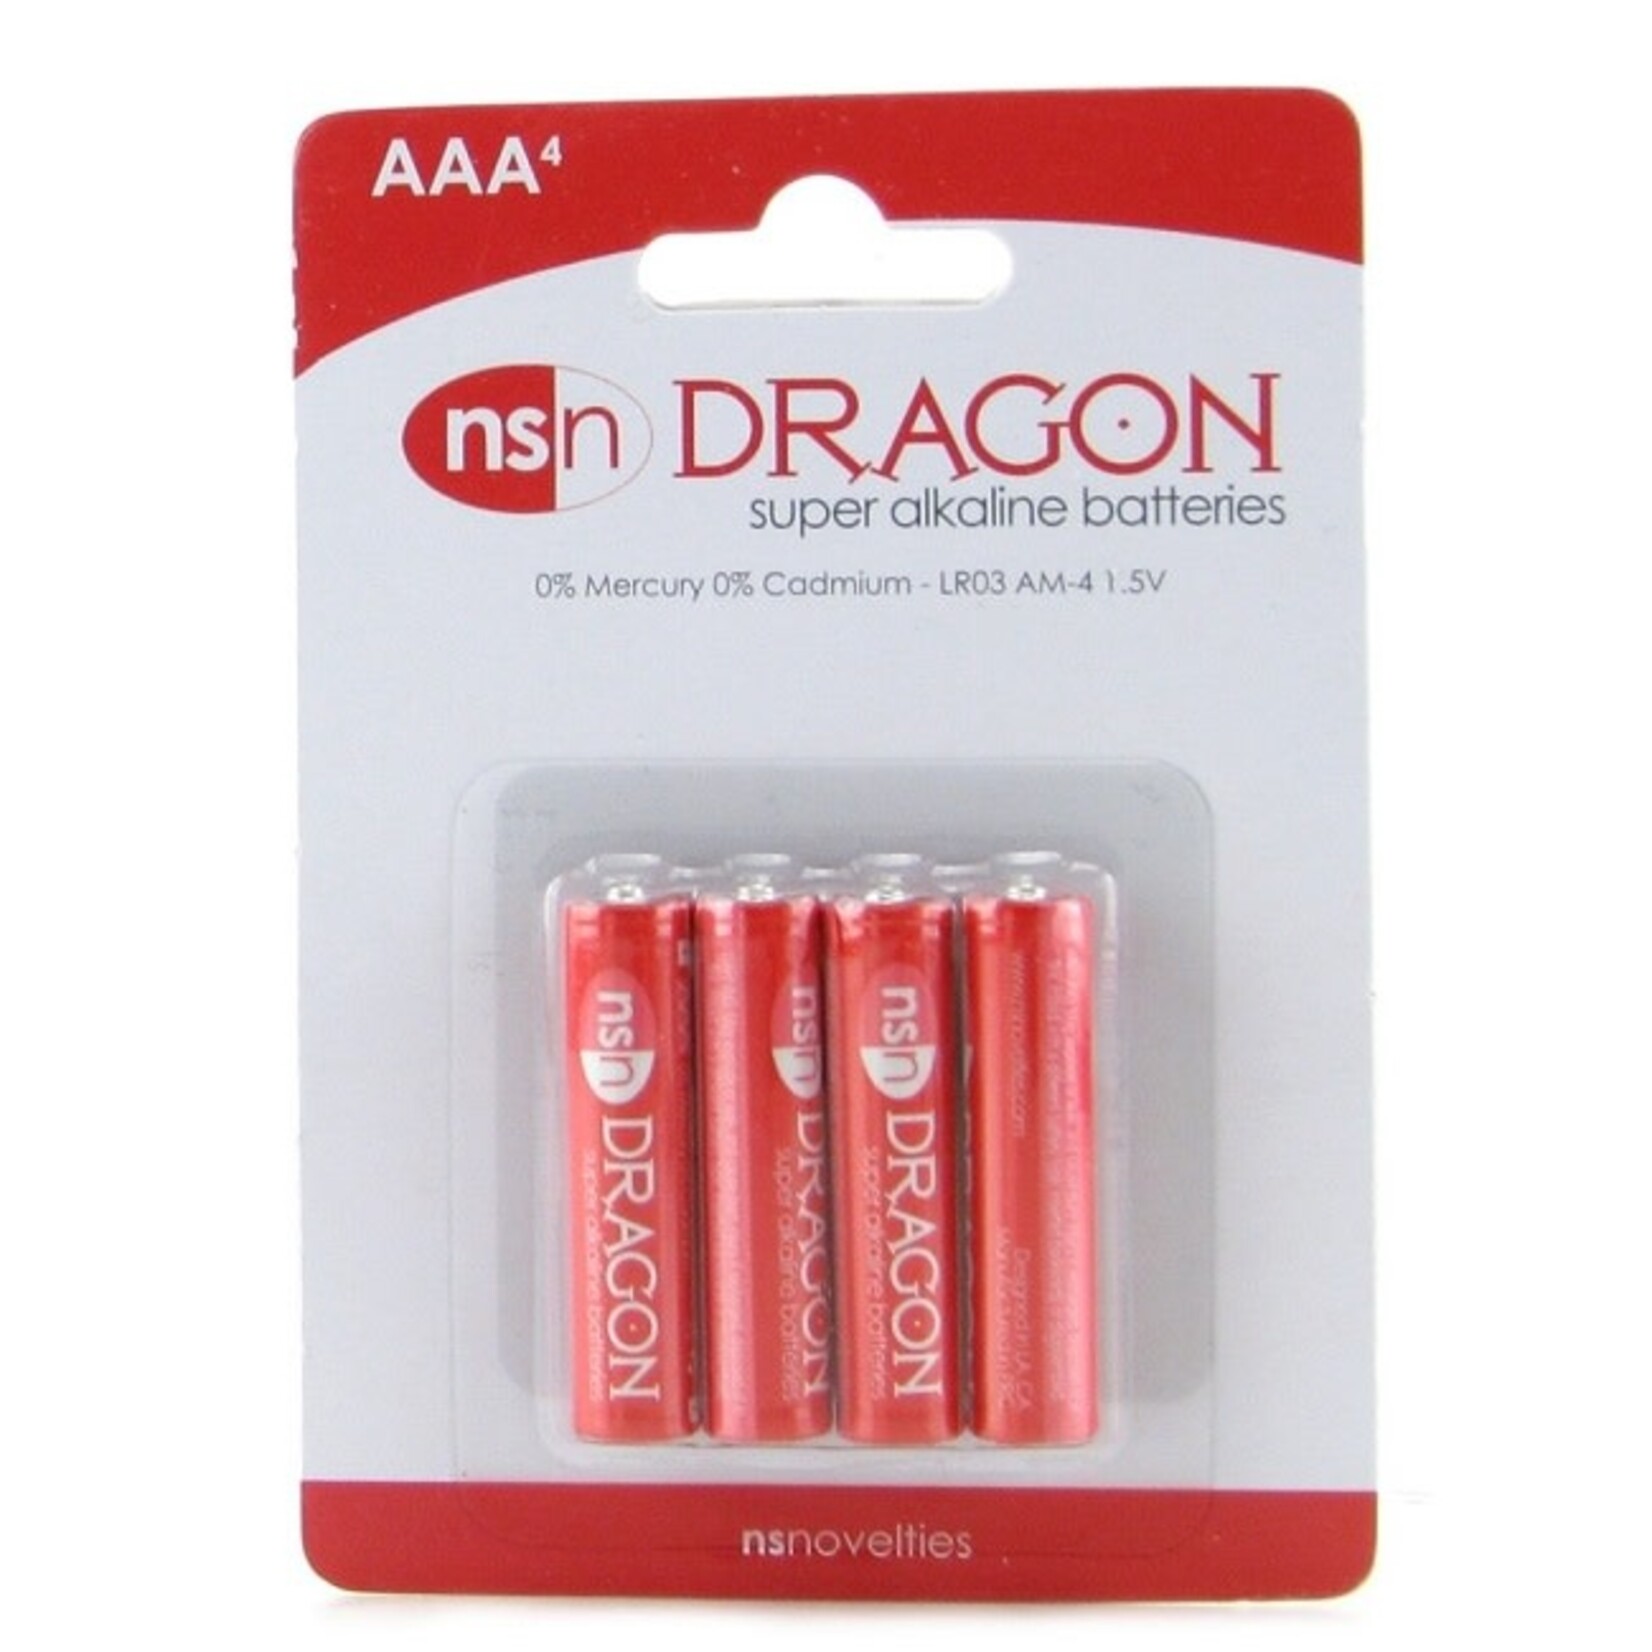 NS Novelties Dragon AAA Super Alkaline Batteries - 4 Pack